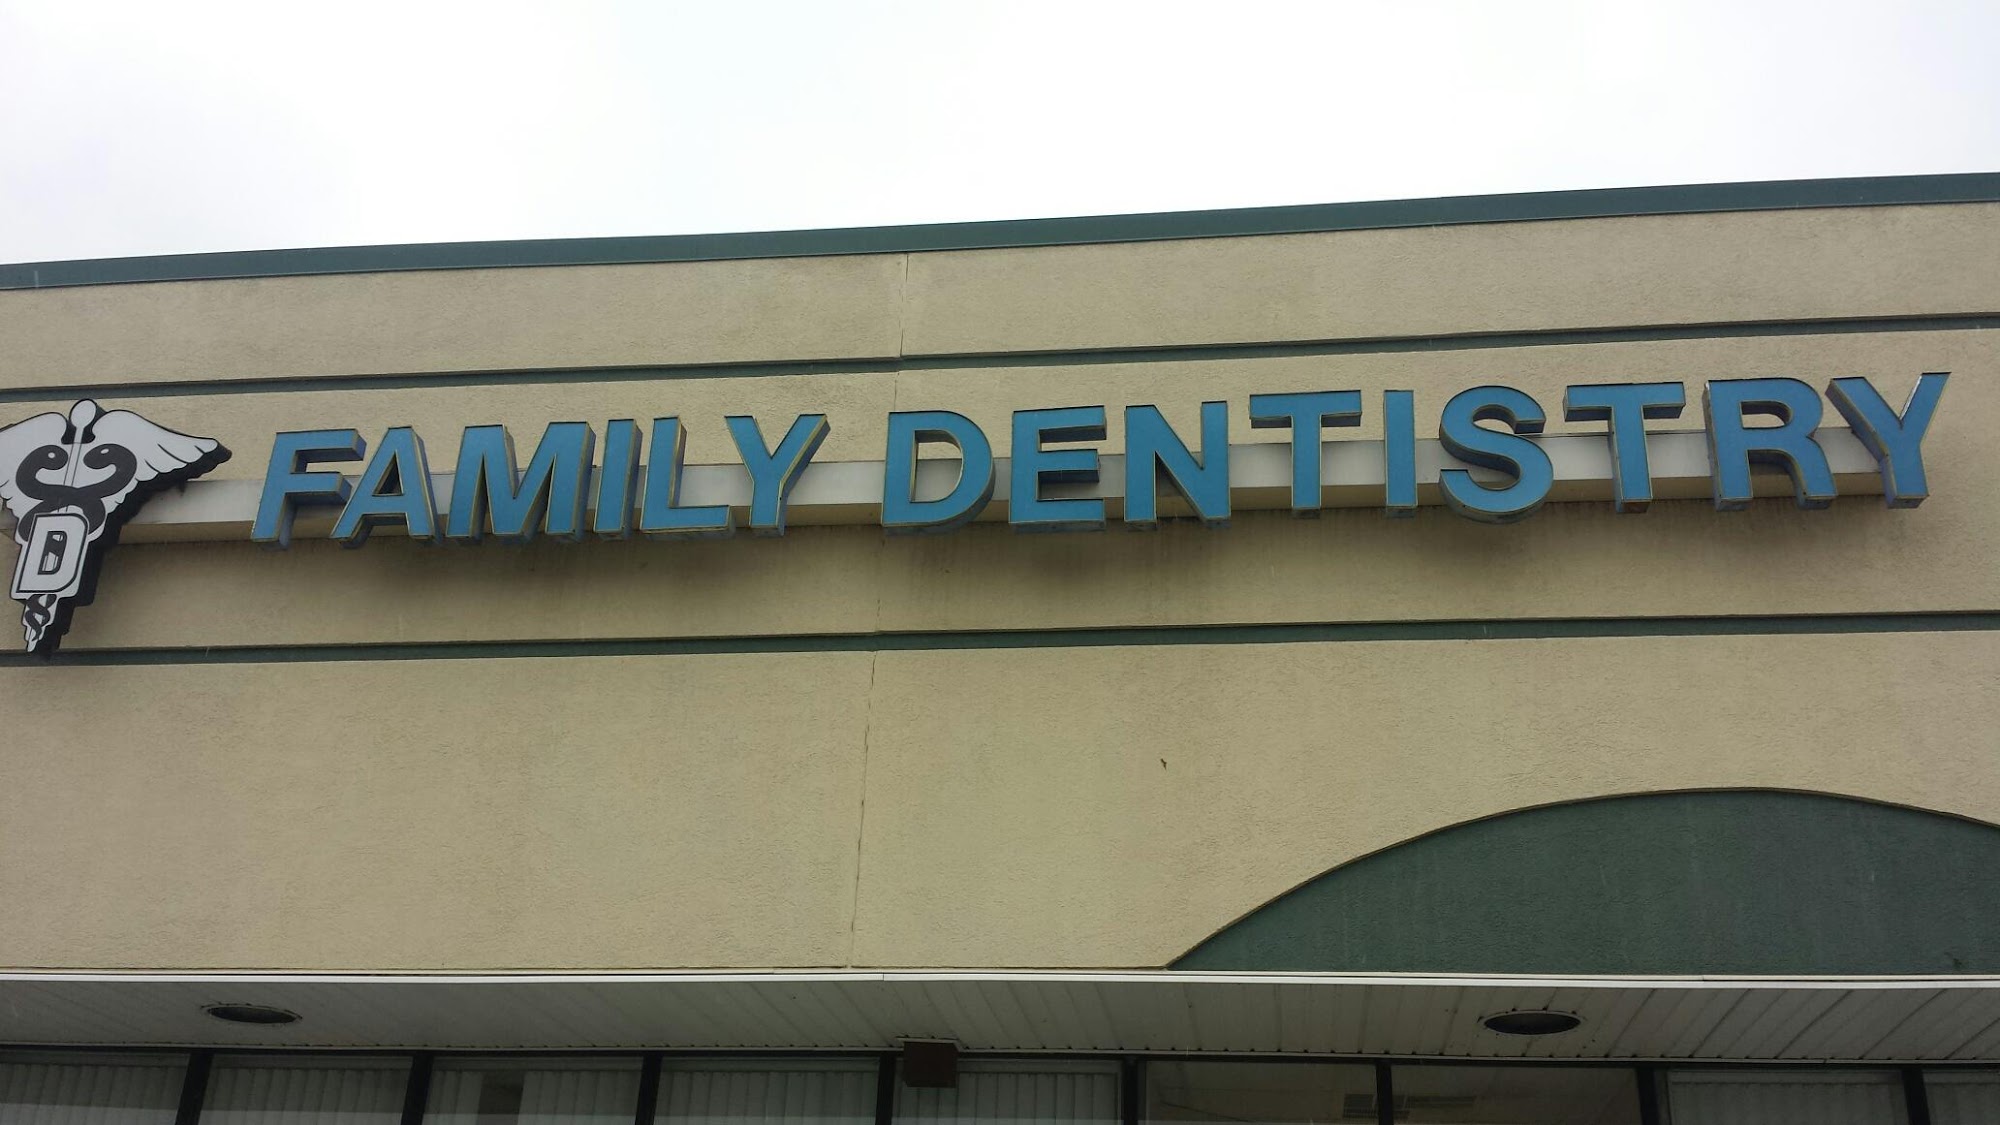 Family Dentistry & Assoc. of Belleville: Dr. Kenneth L. Williams Dr. Brian Bishop